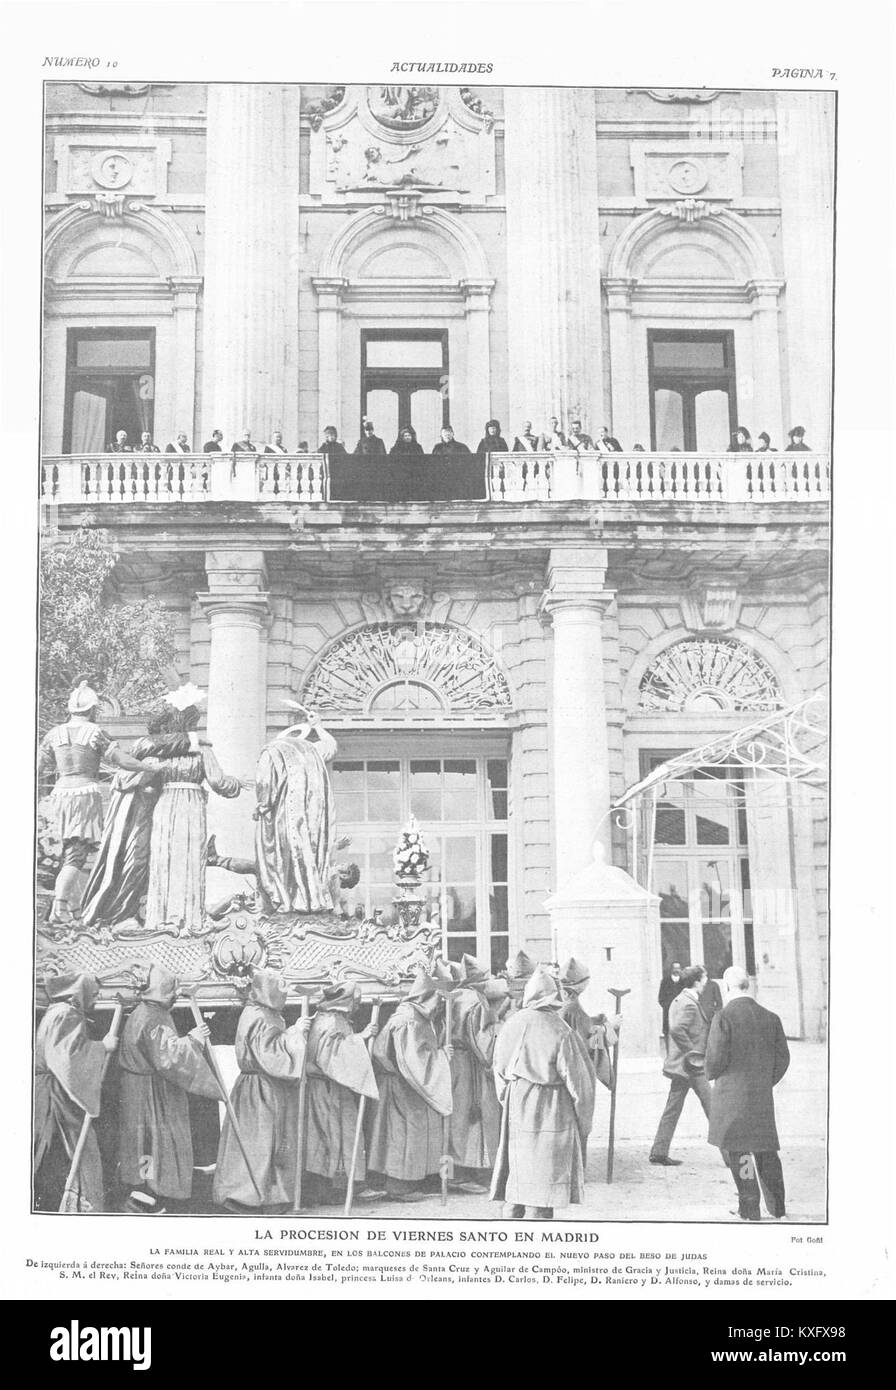 1908-04-23, Actualidades, La procesión de Viernes Santo en Madrid, Goñi Stock Photo